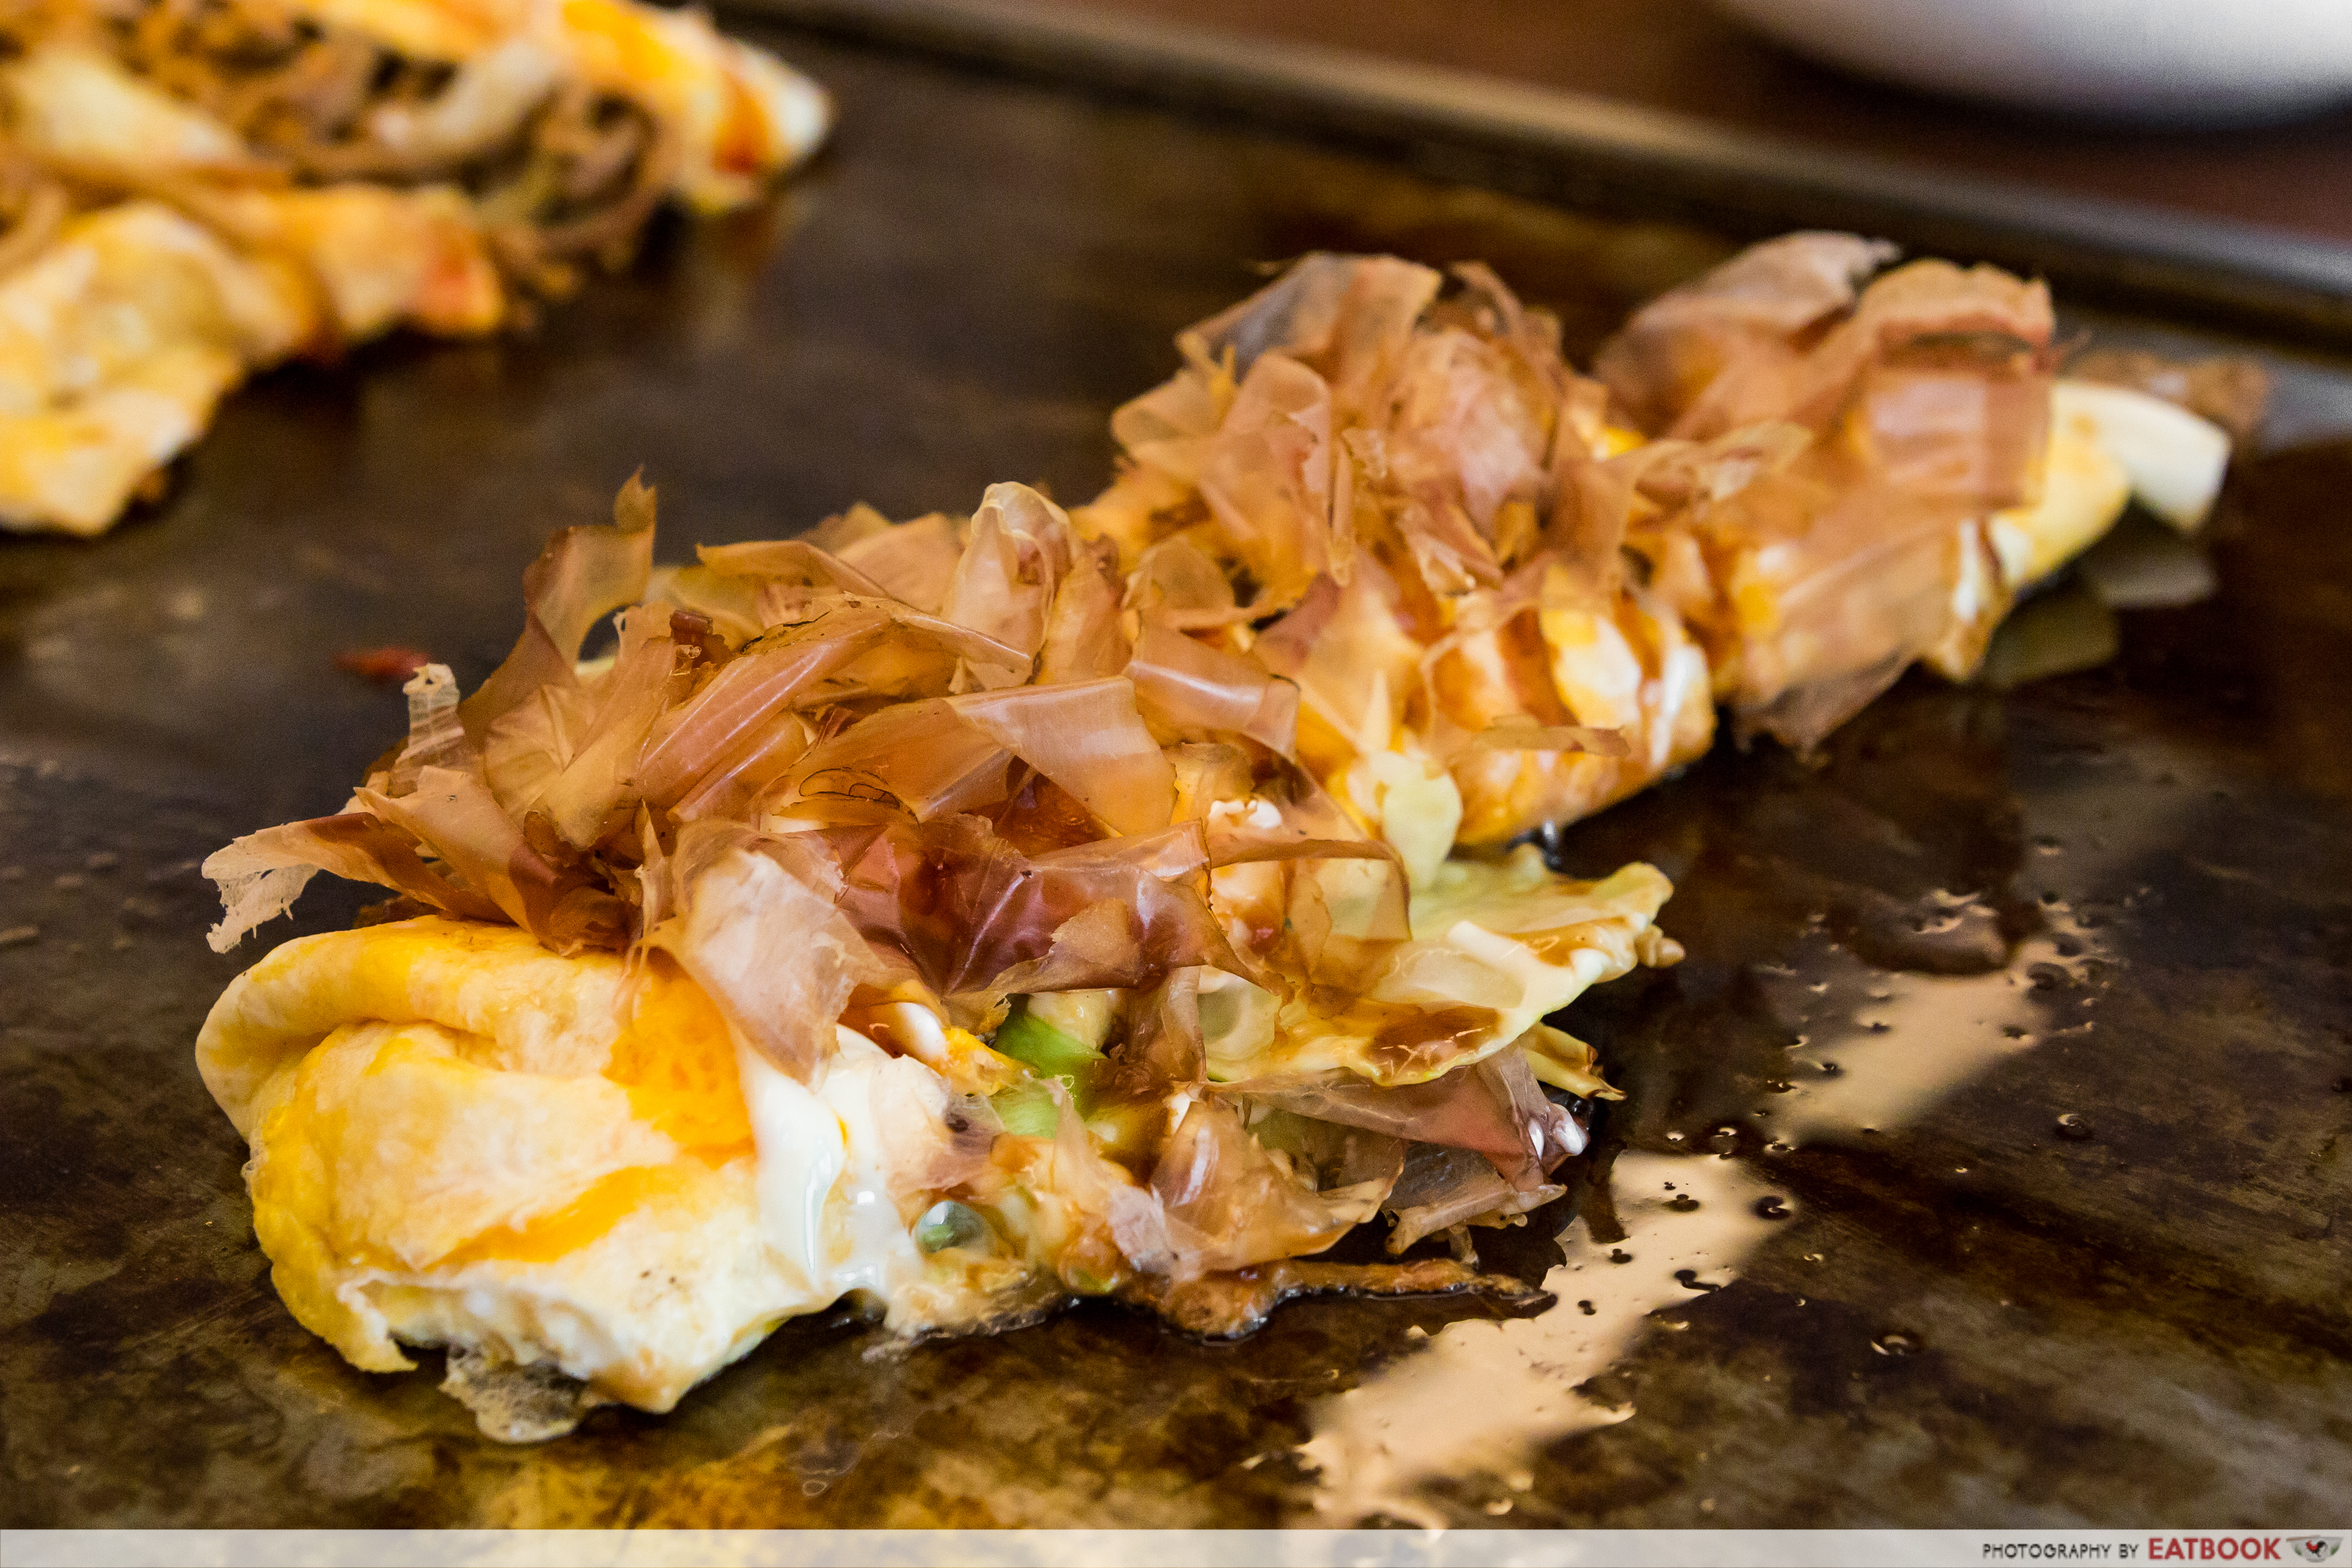 Fugetsu- pork omelette